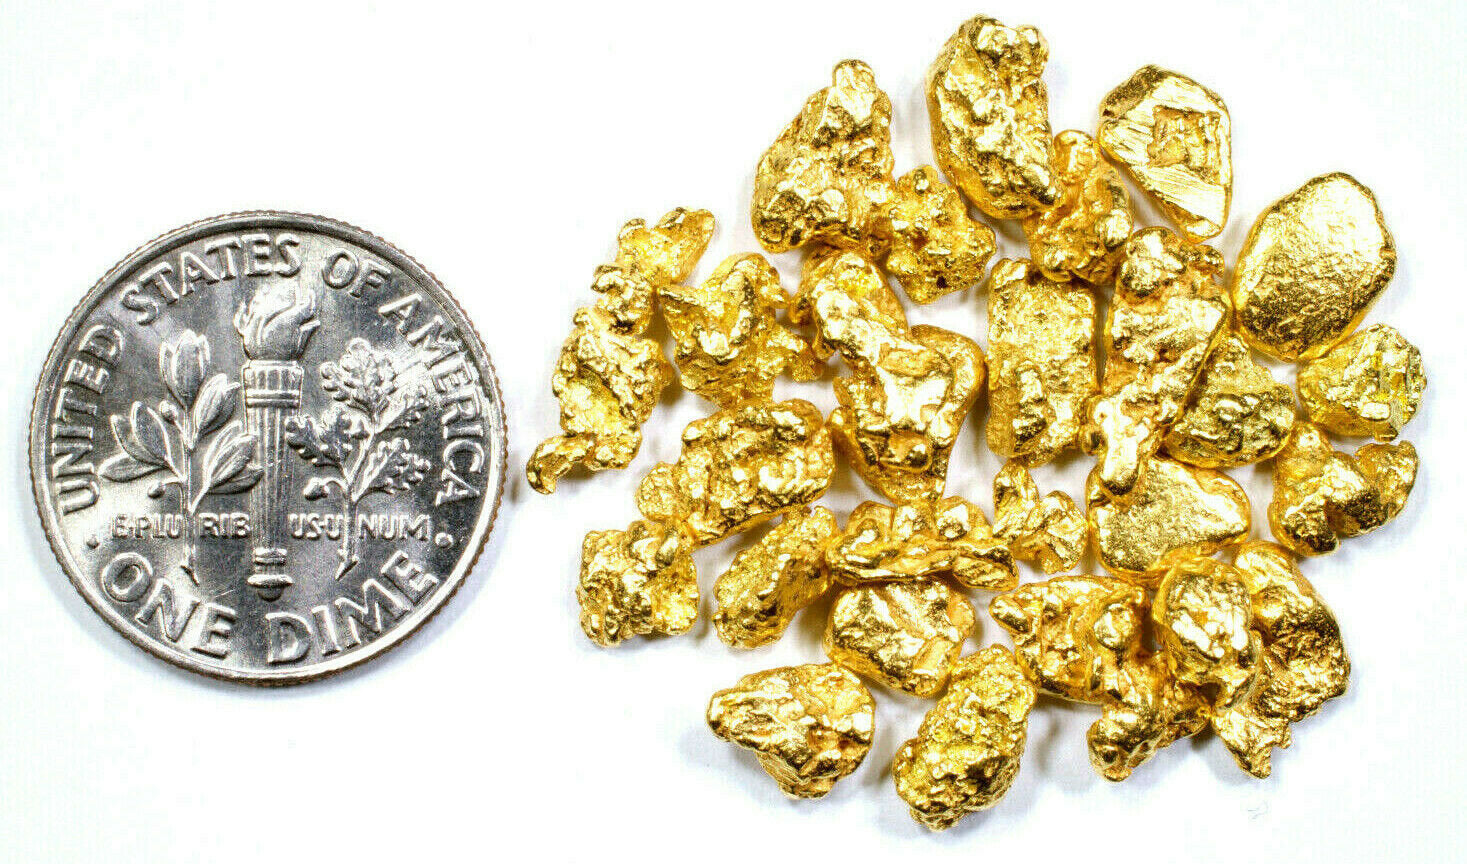 0.400+ GRAMS ALASKAN YUKON BC NATURAL PURE GOLD NUGGET HAND PICKED - Liquidbullion